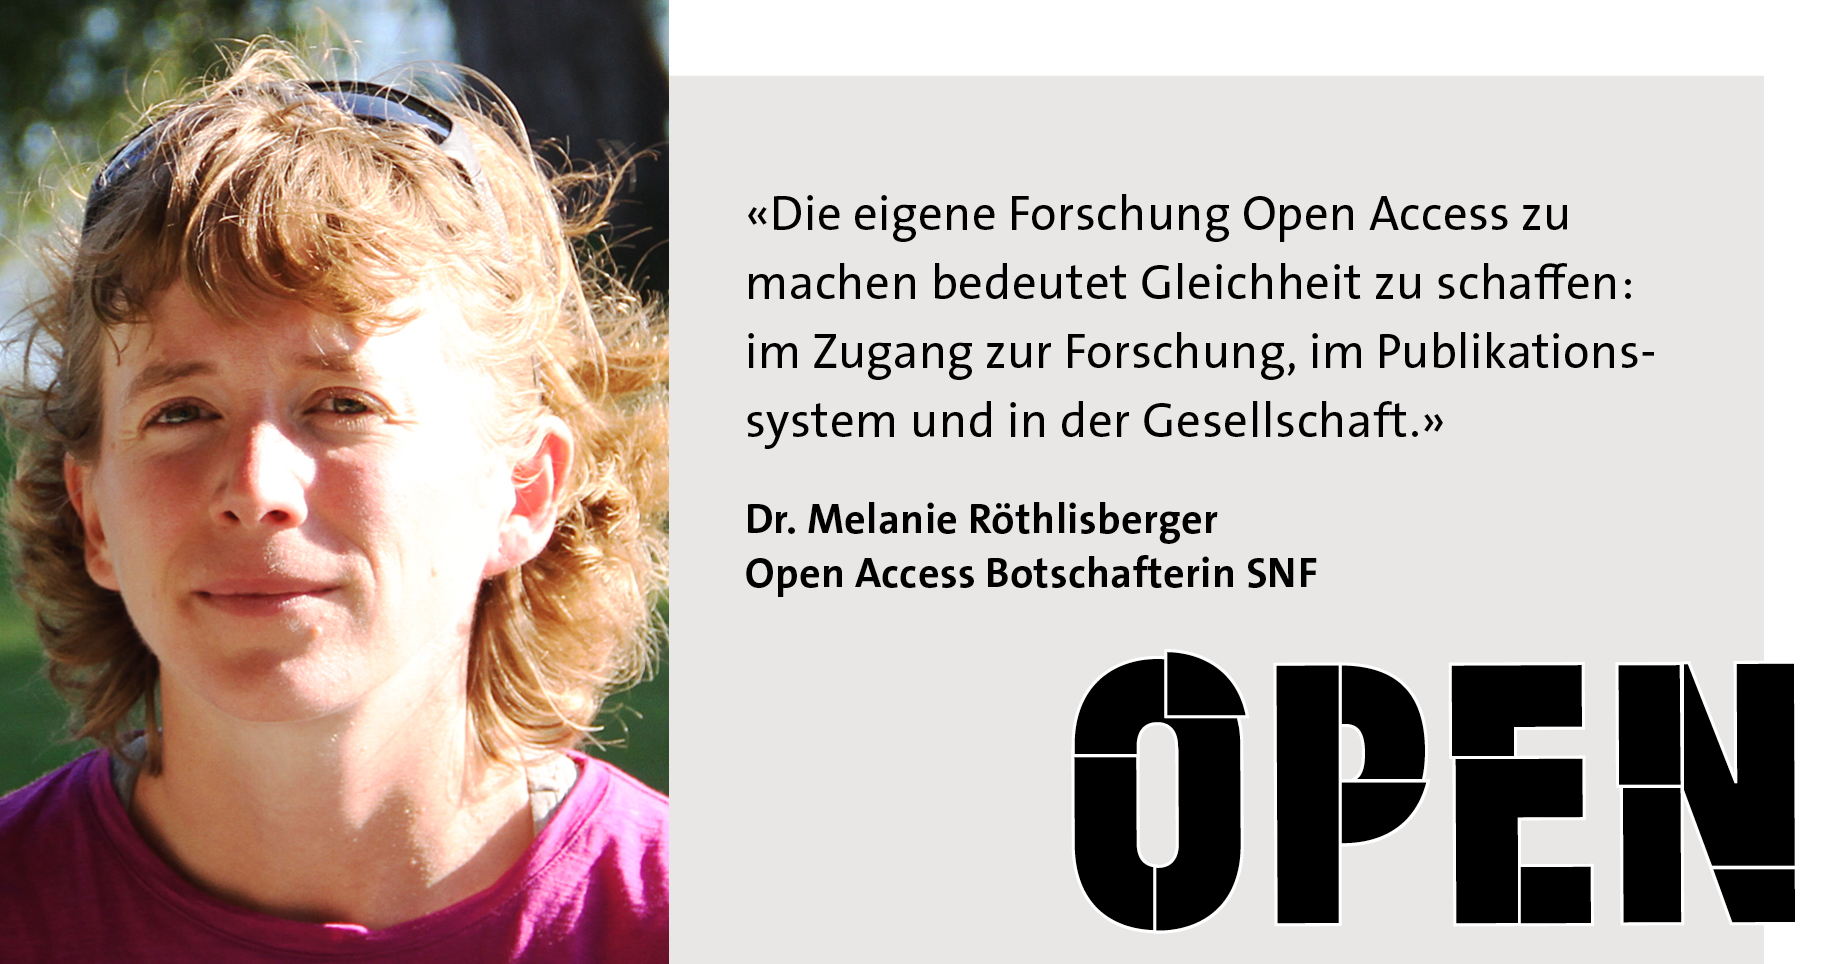 Foto von Melanie Röthlisberger, Open Access Botschafterin des SNF, Zitat: «Die eigene Forschung Open Access zu machen bedeutet Gleichheit zu schaffen: im Zugang zur Forschung, im Publikationssystem und in der Gesellschaft.»